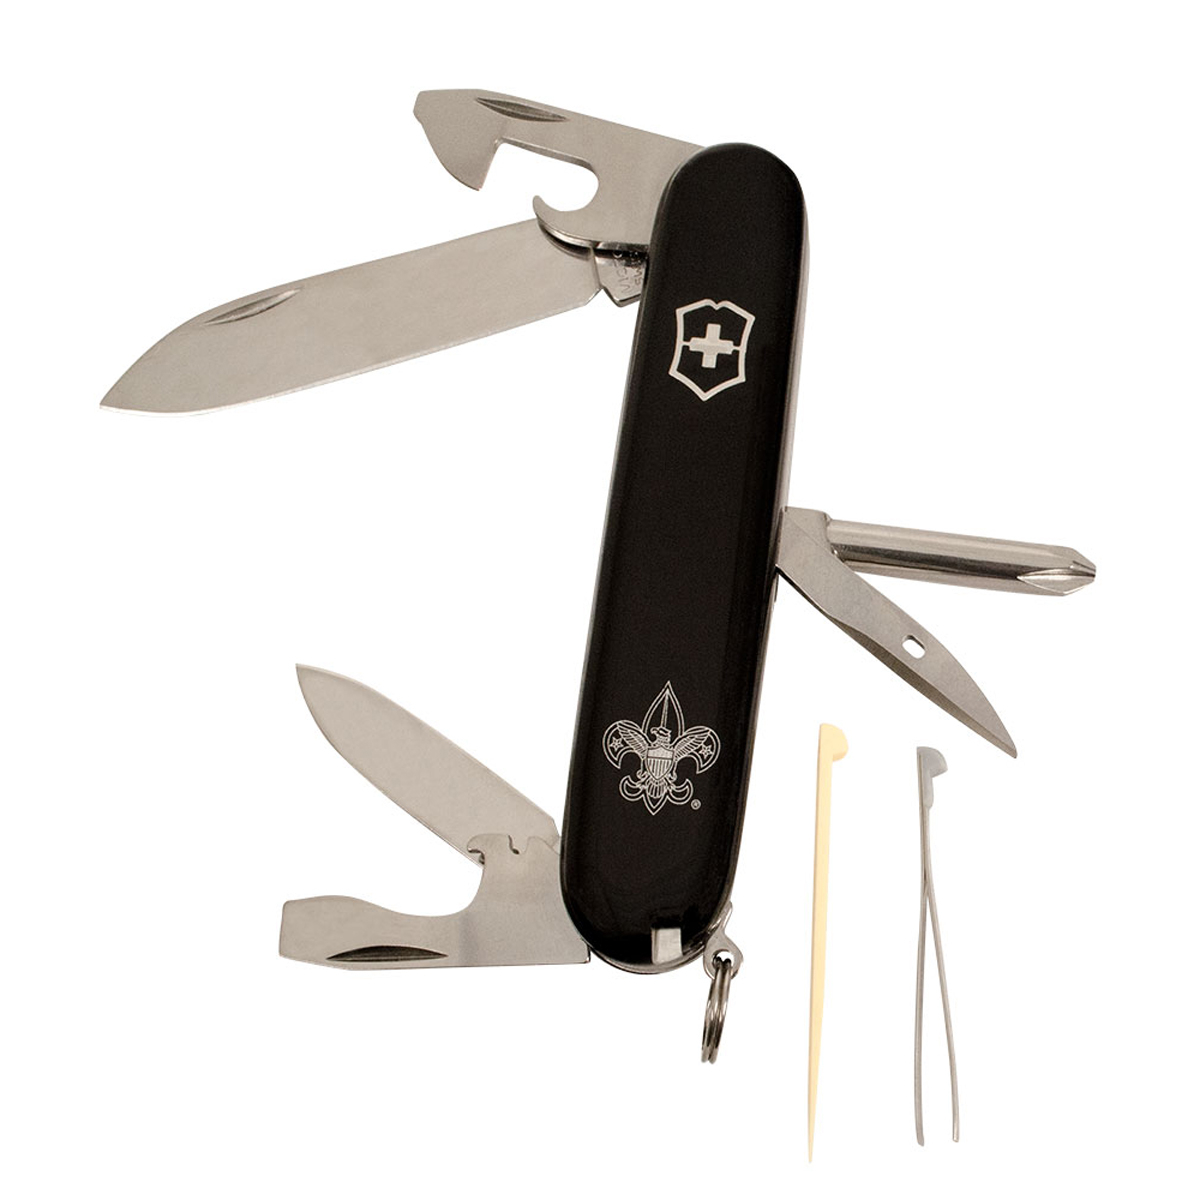 BSA G10 Serrated Knife, 3 1/2 blade - BSA CAC Scout Shop